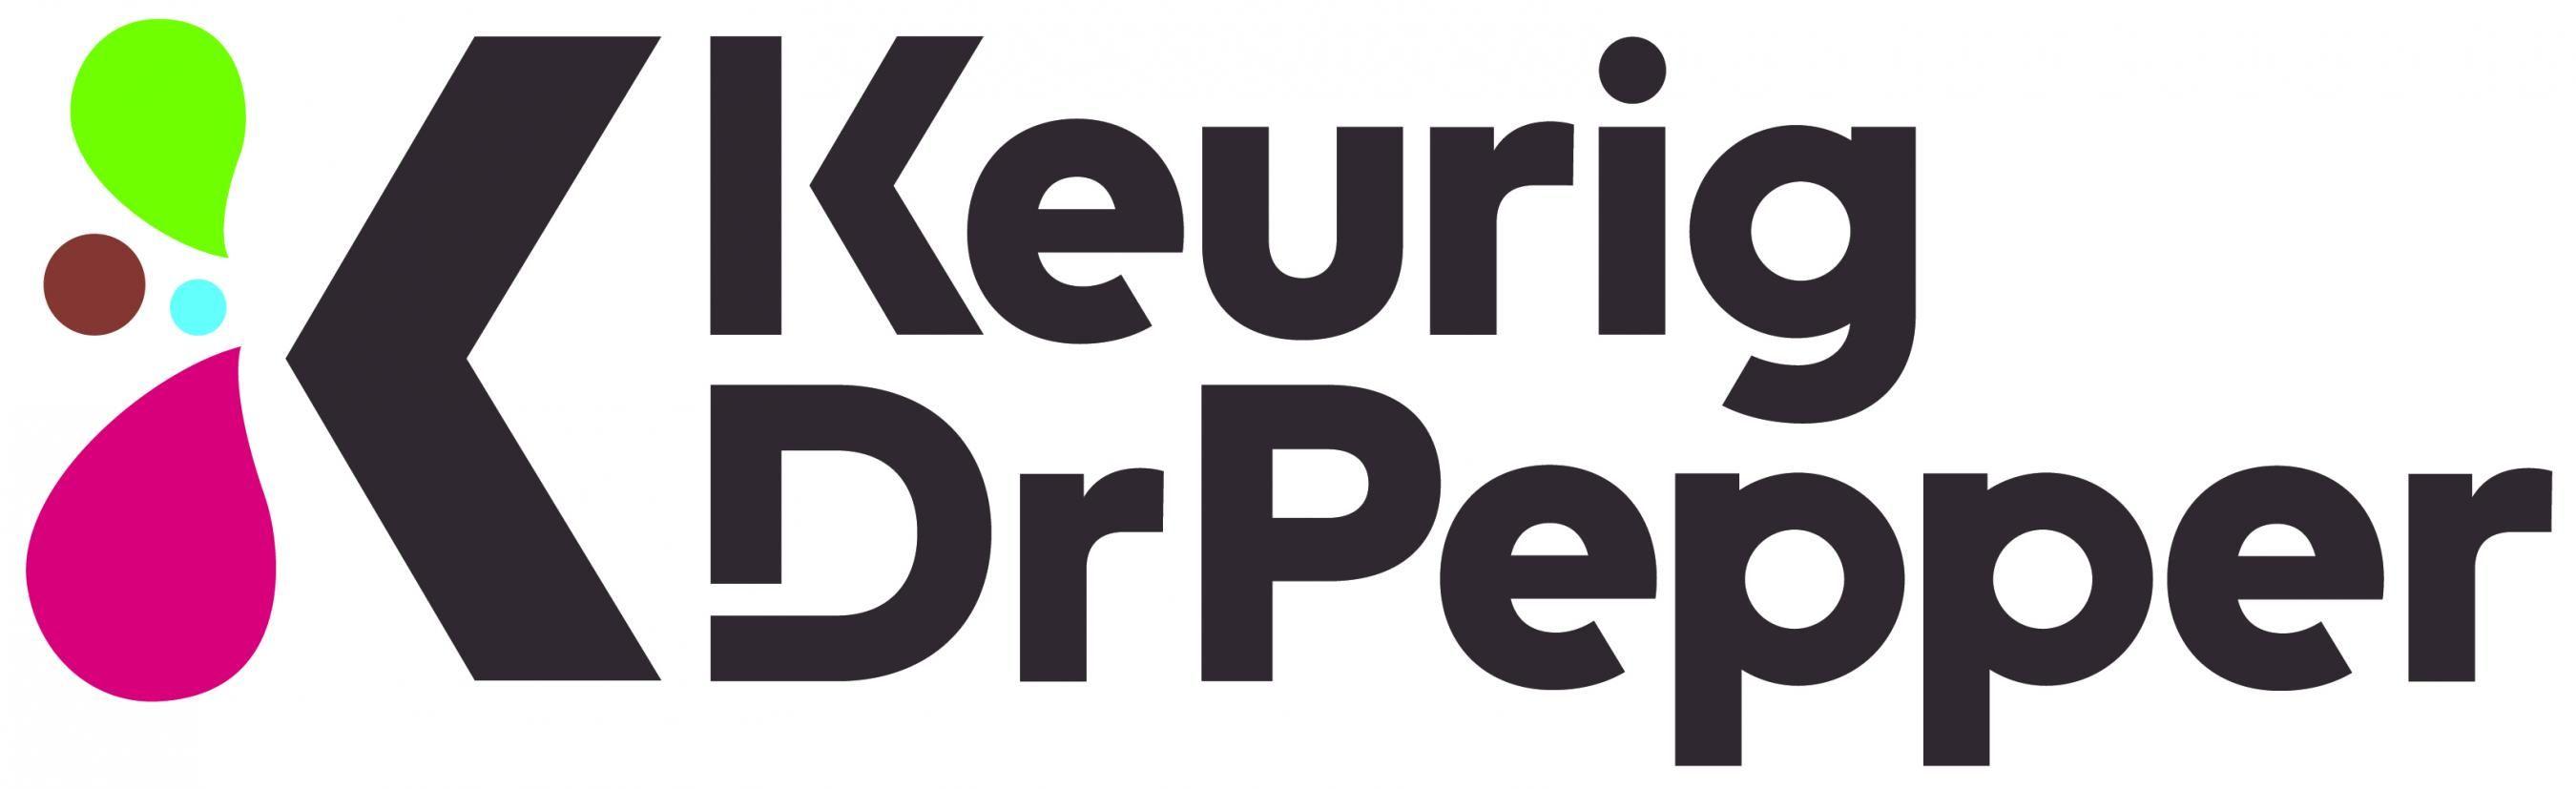 Dr Pepper Logo - Logos | Keurig Dr Pepper